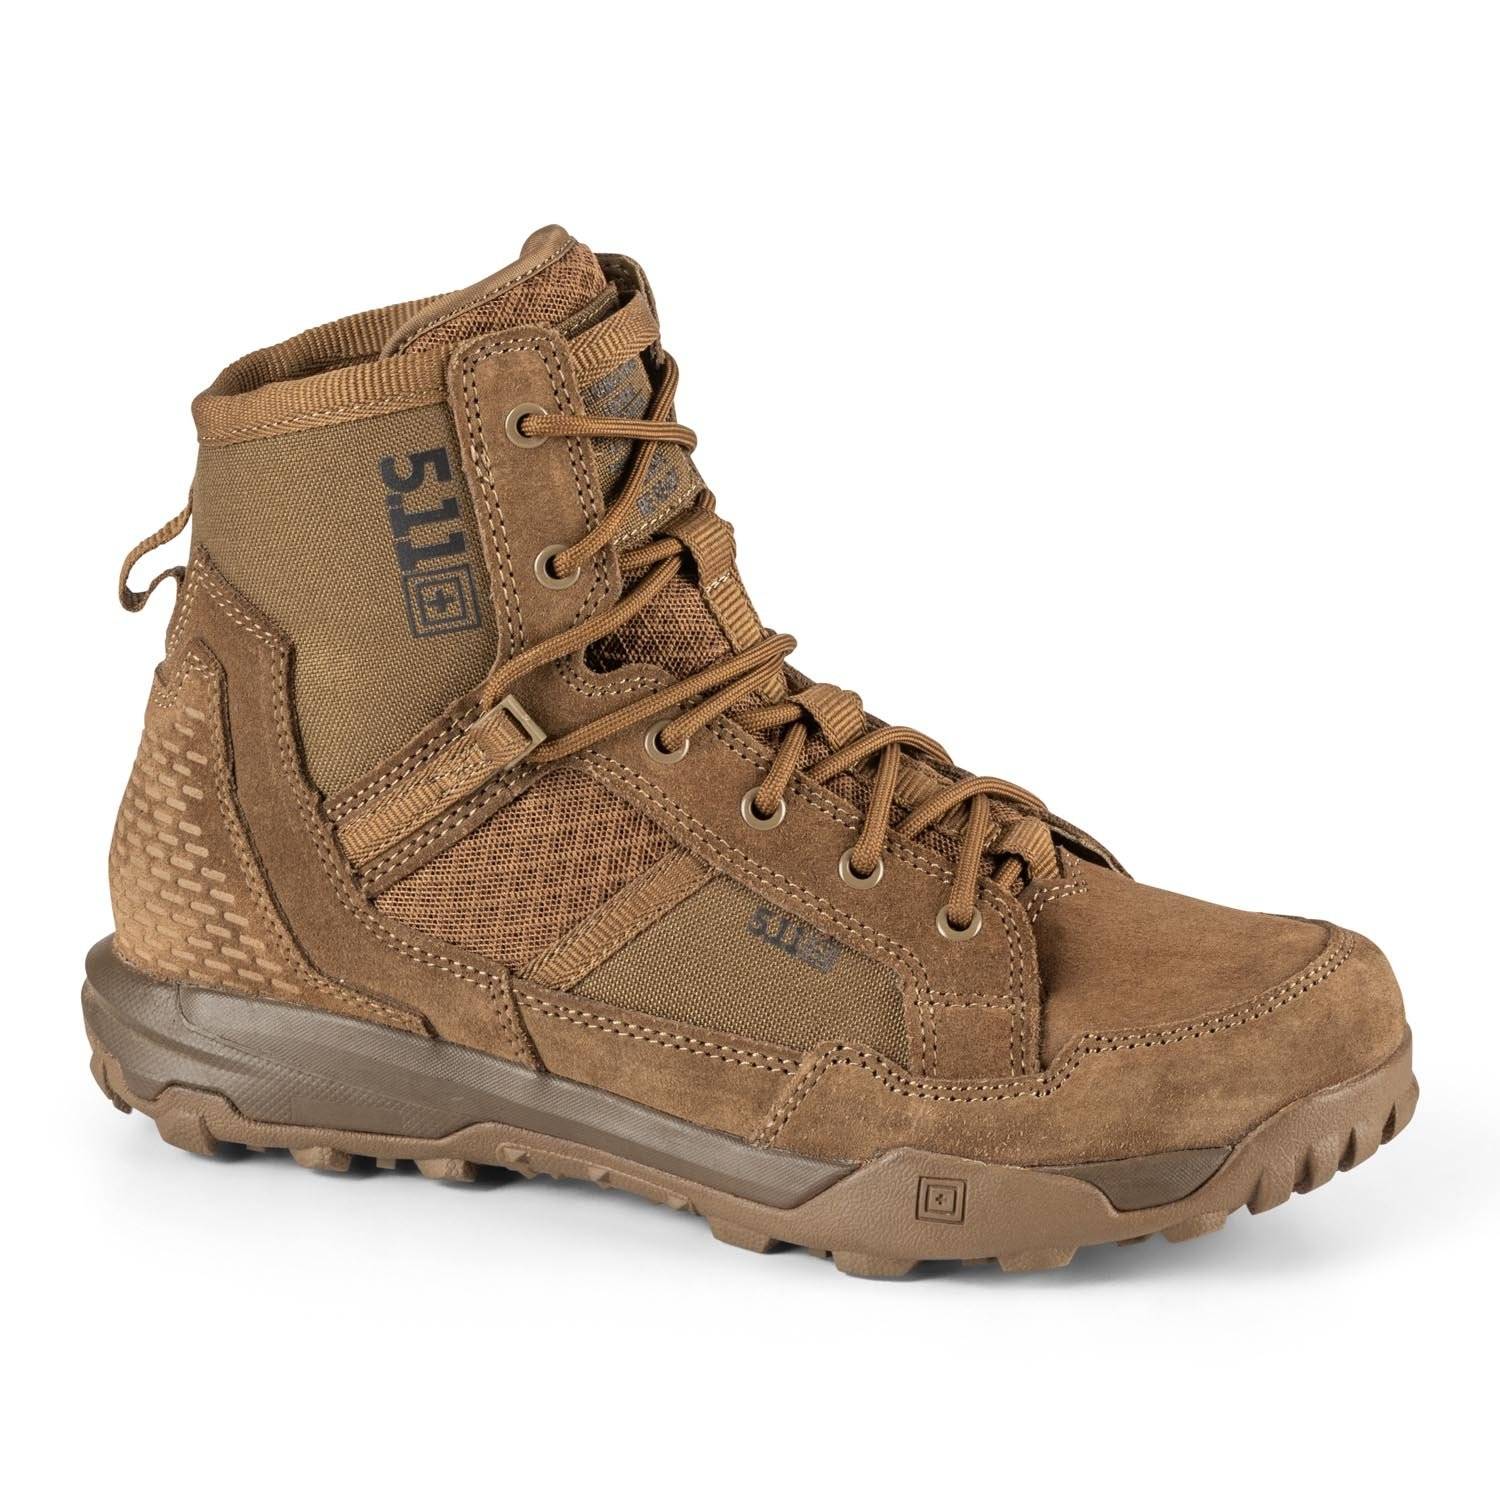 5.11 Tactical A/T 6" Boots